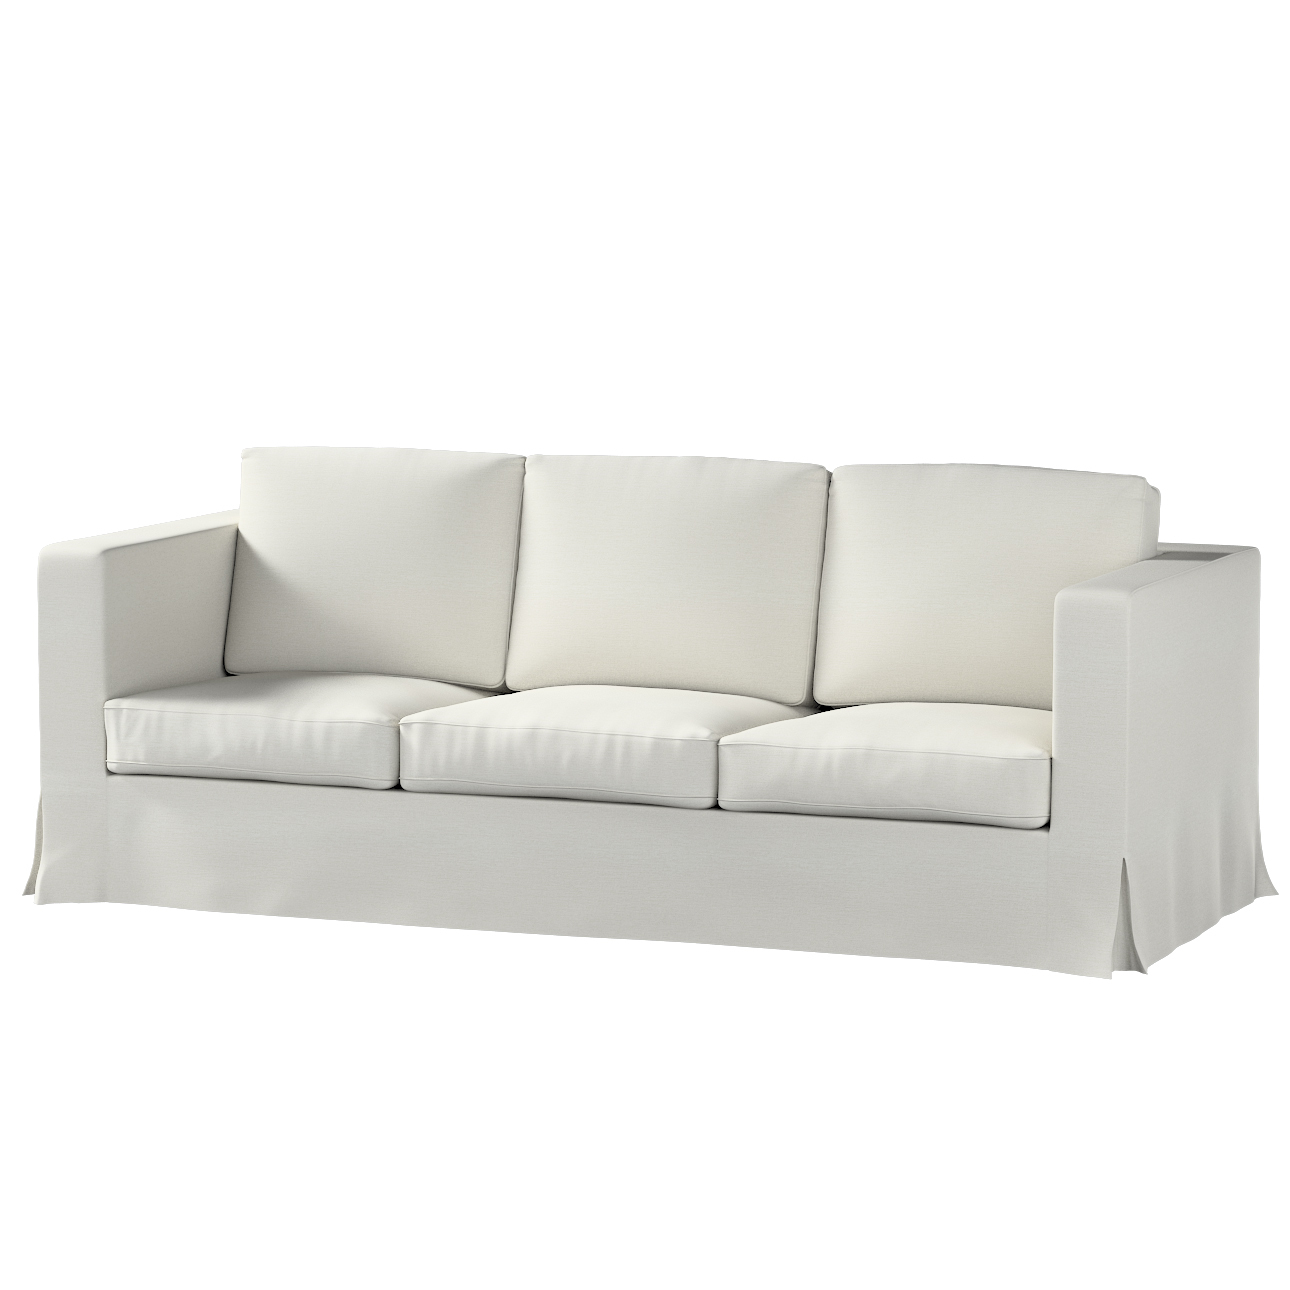 Bezug für Karlanda 3-Sitzer Sofa nicht ausklappbar, lang, mittelgrau, Bezug günstig online kaufen